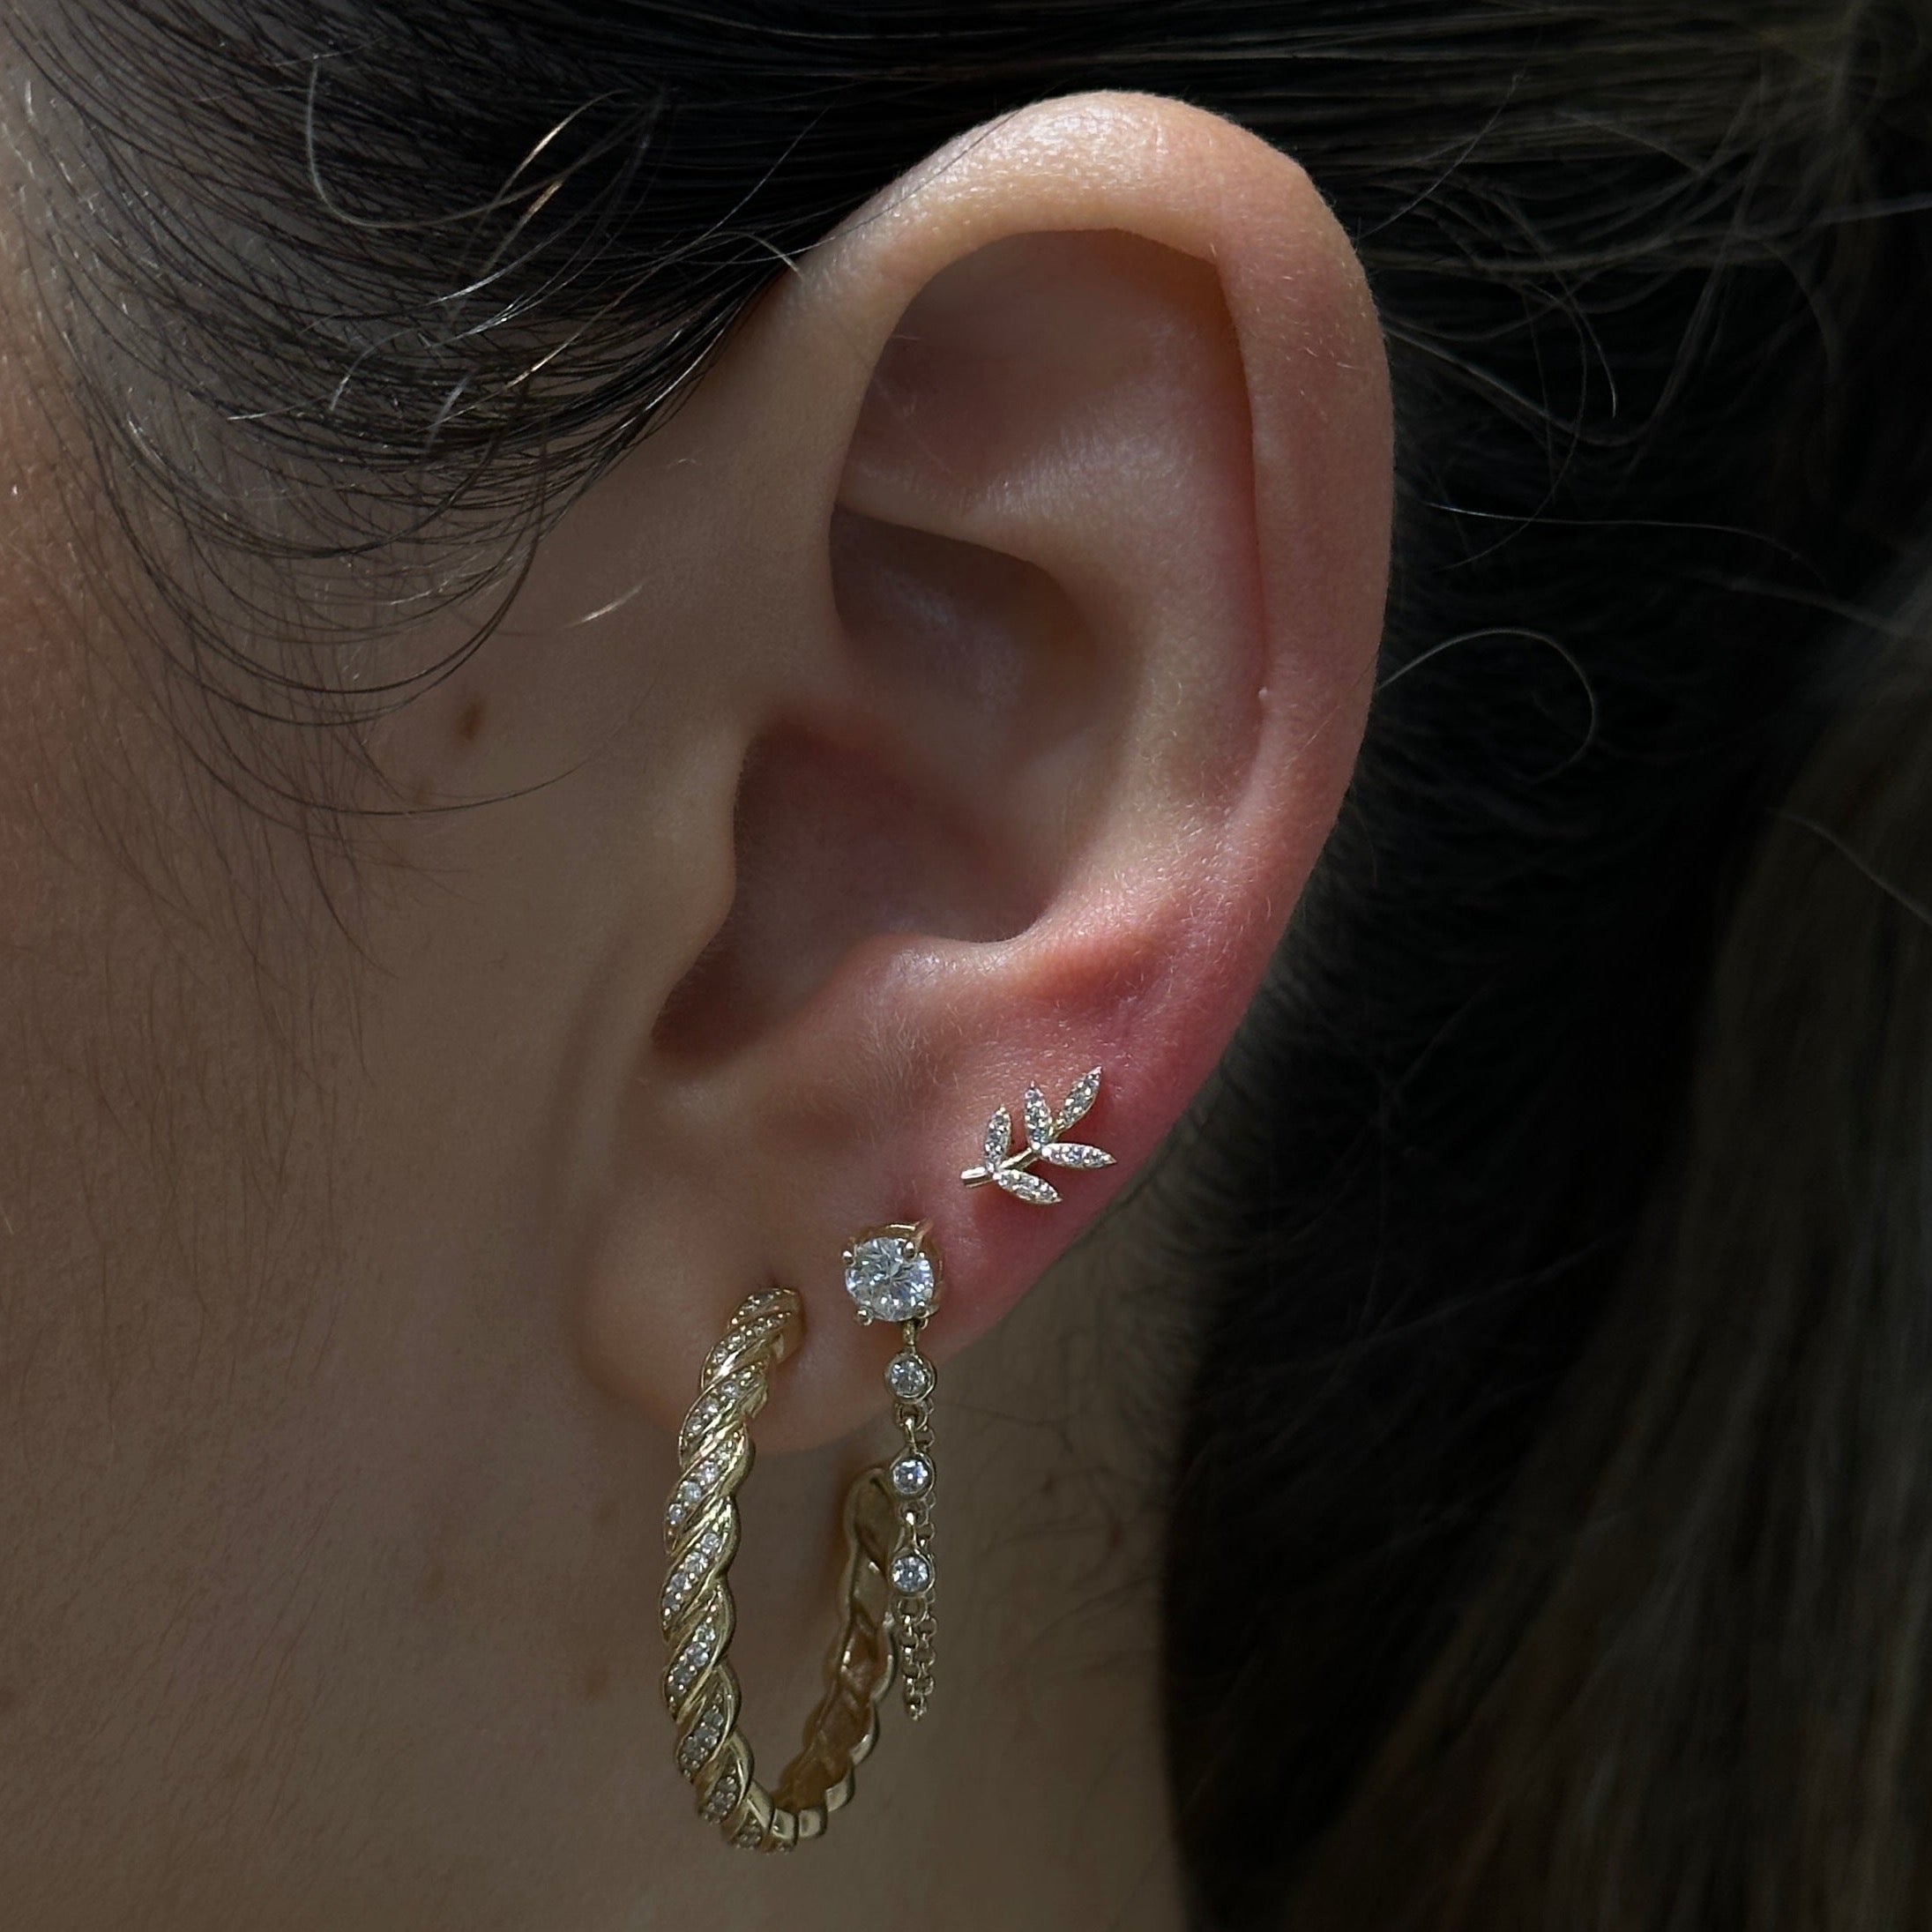 Gold Diamond Leaf Stud Earring